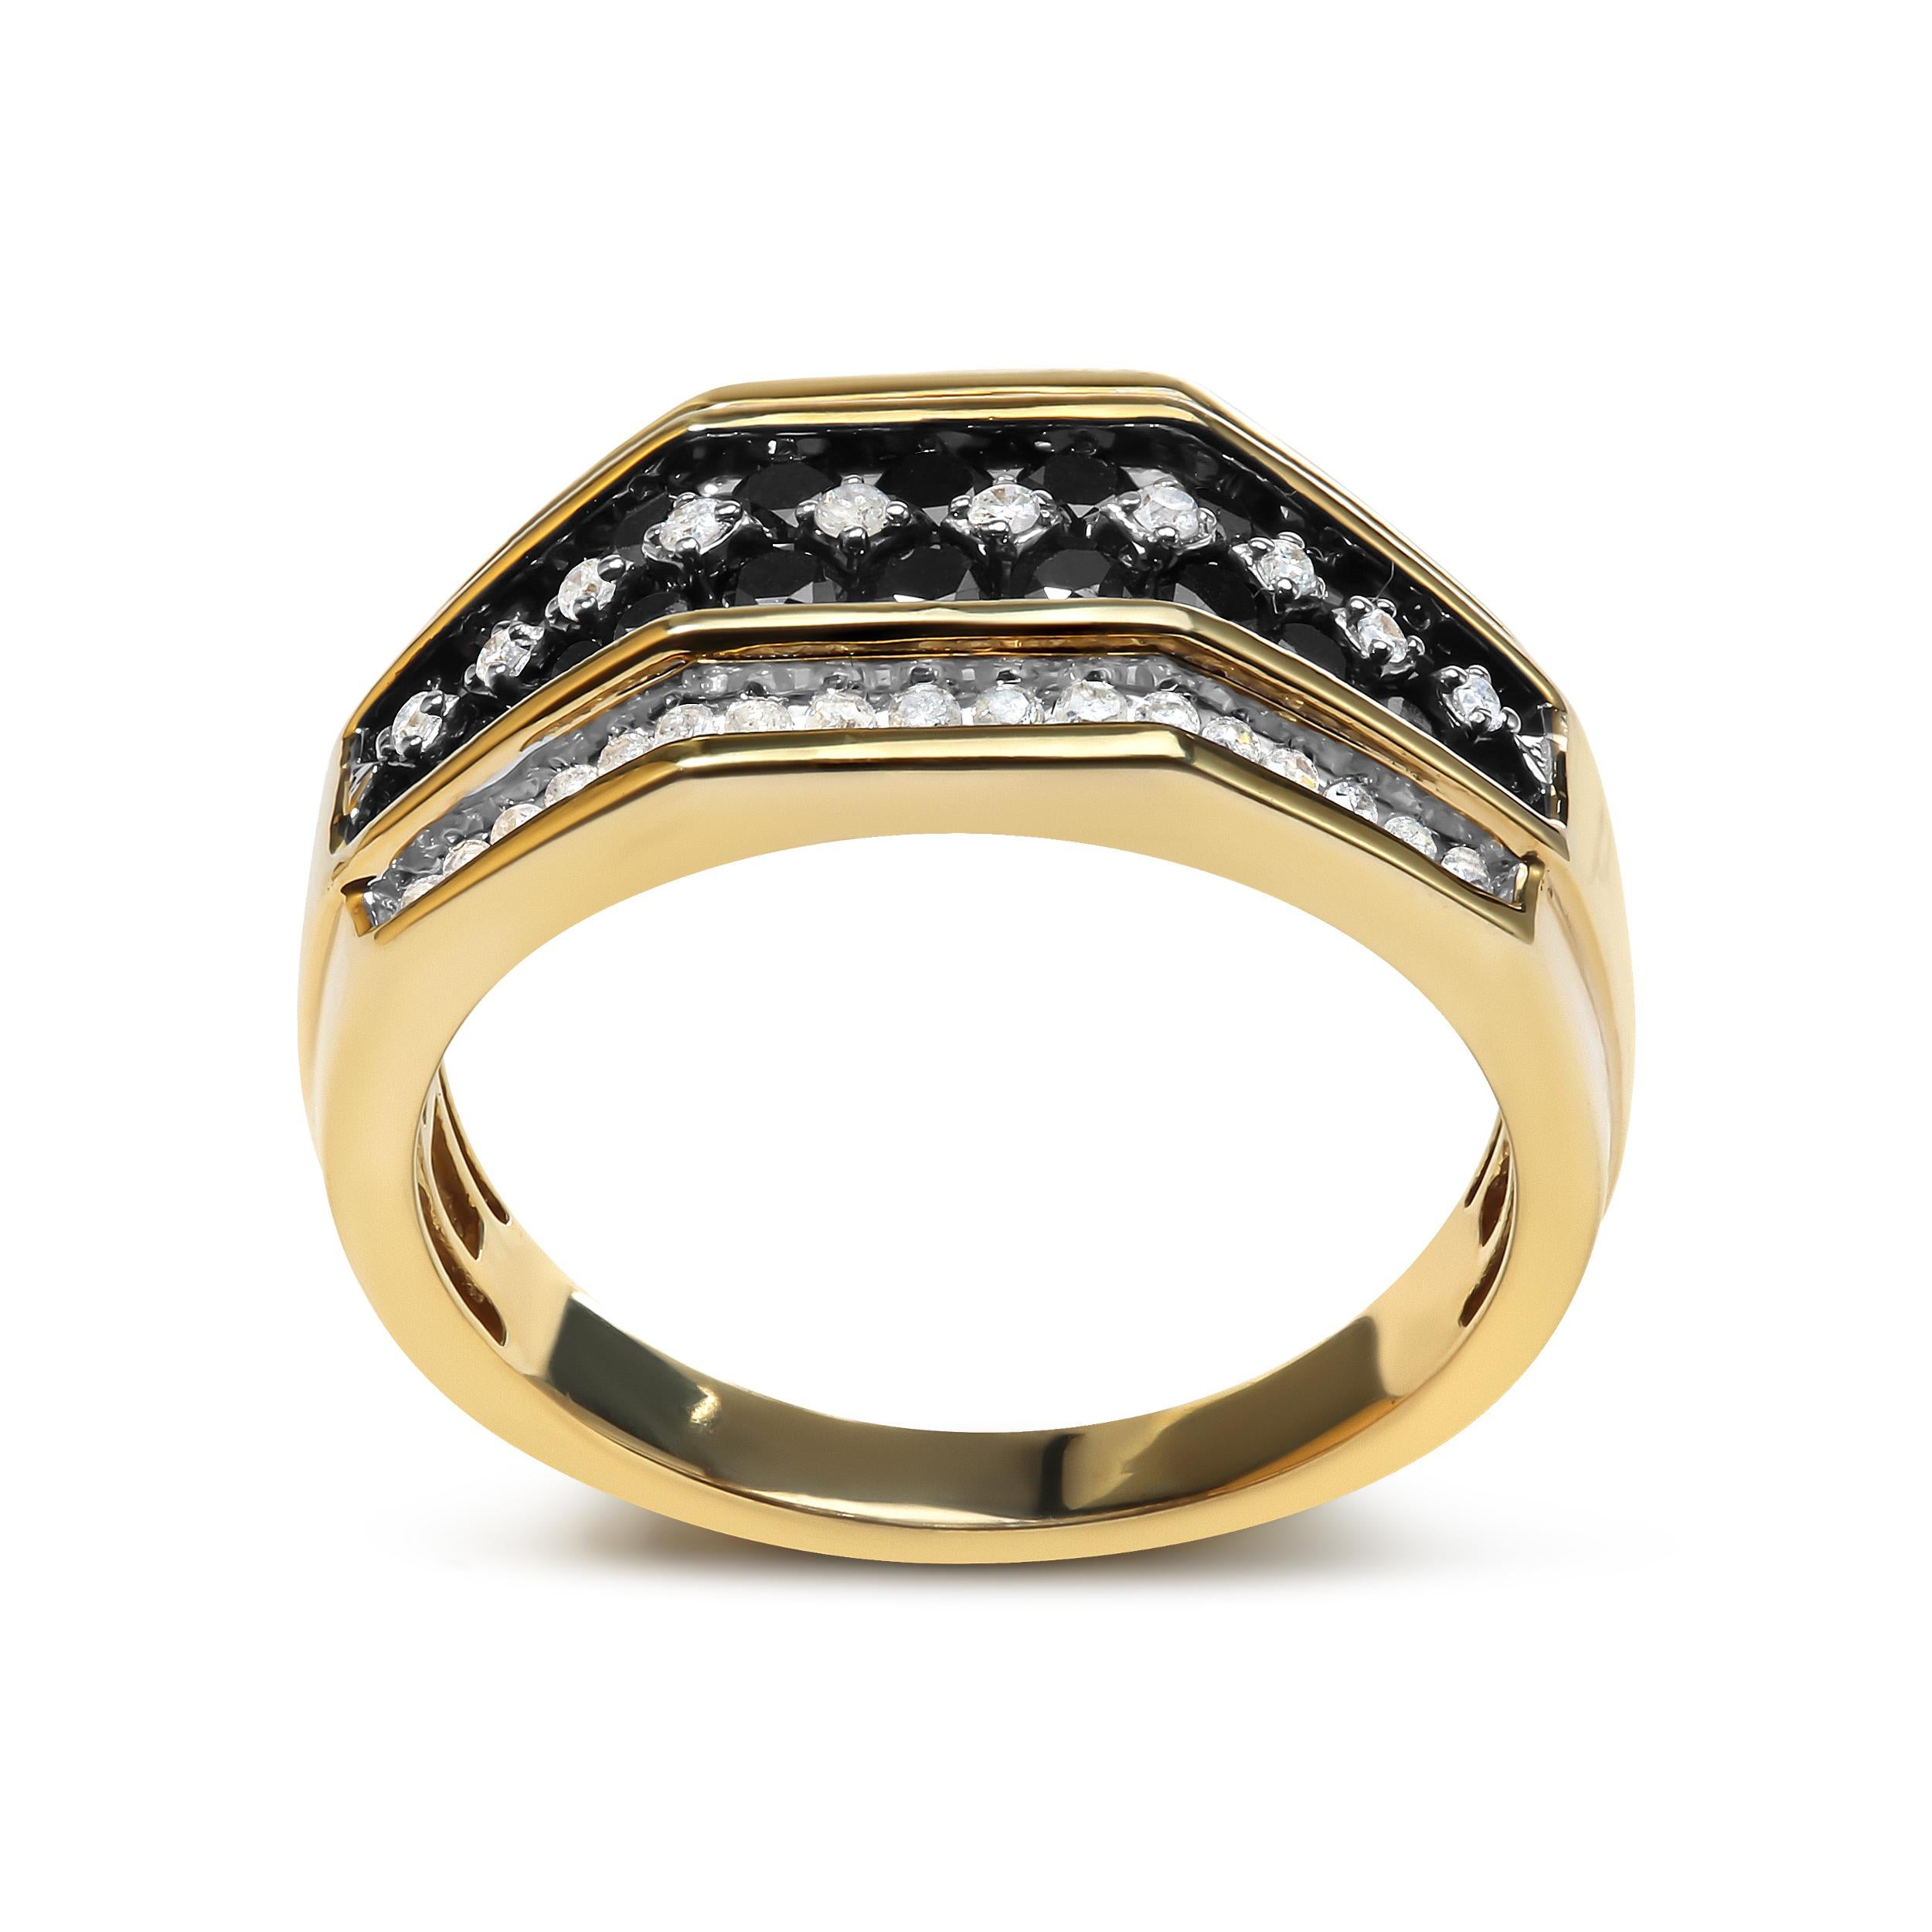 Gönnen Sie sich Luxus mit unserem atemberaubenden schwarz-weißen Diamantbandring für Männer. Dieses bemerkenswerte Stück ist aus 10-karätigem Gelbgold gefertigt und besticht durch ein raffiniertes und stilvolles Design, das Raffinesse ausstrahlt.